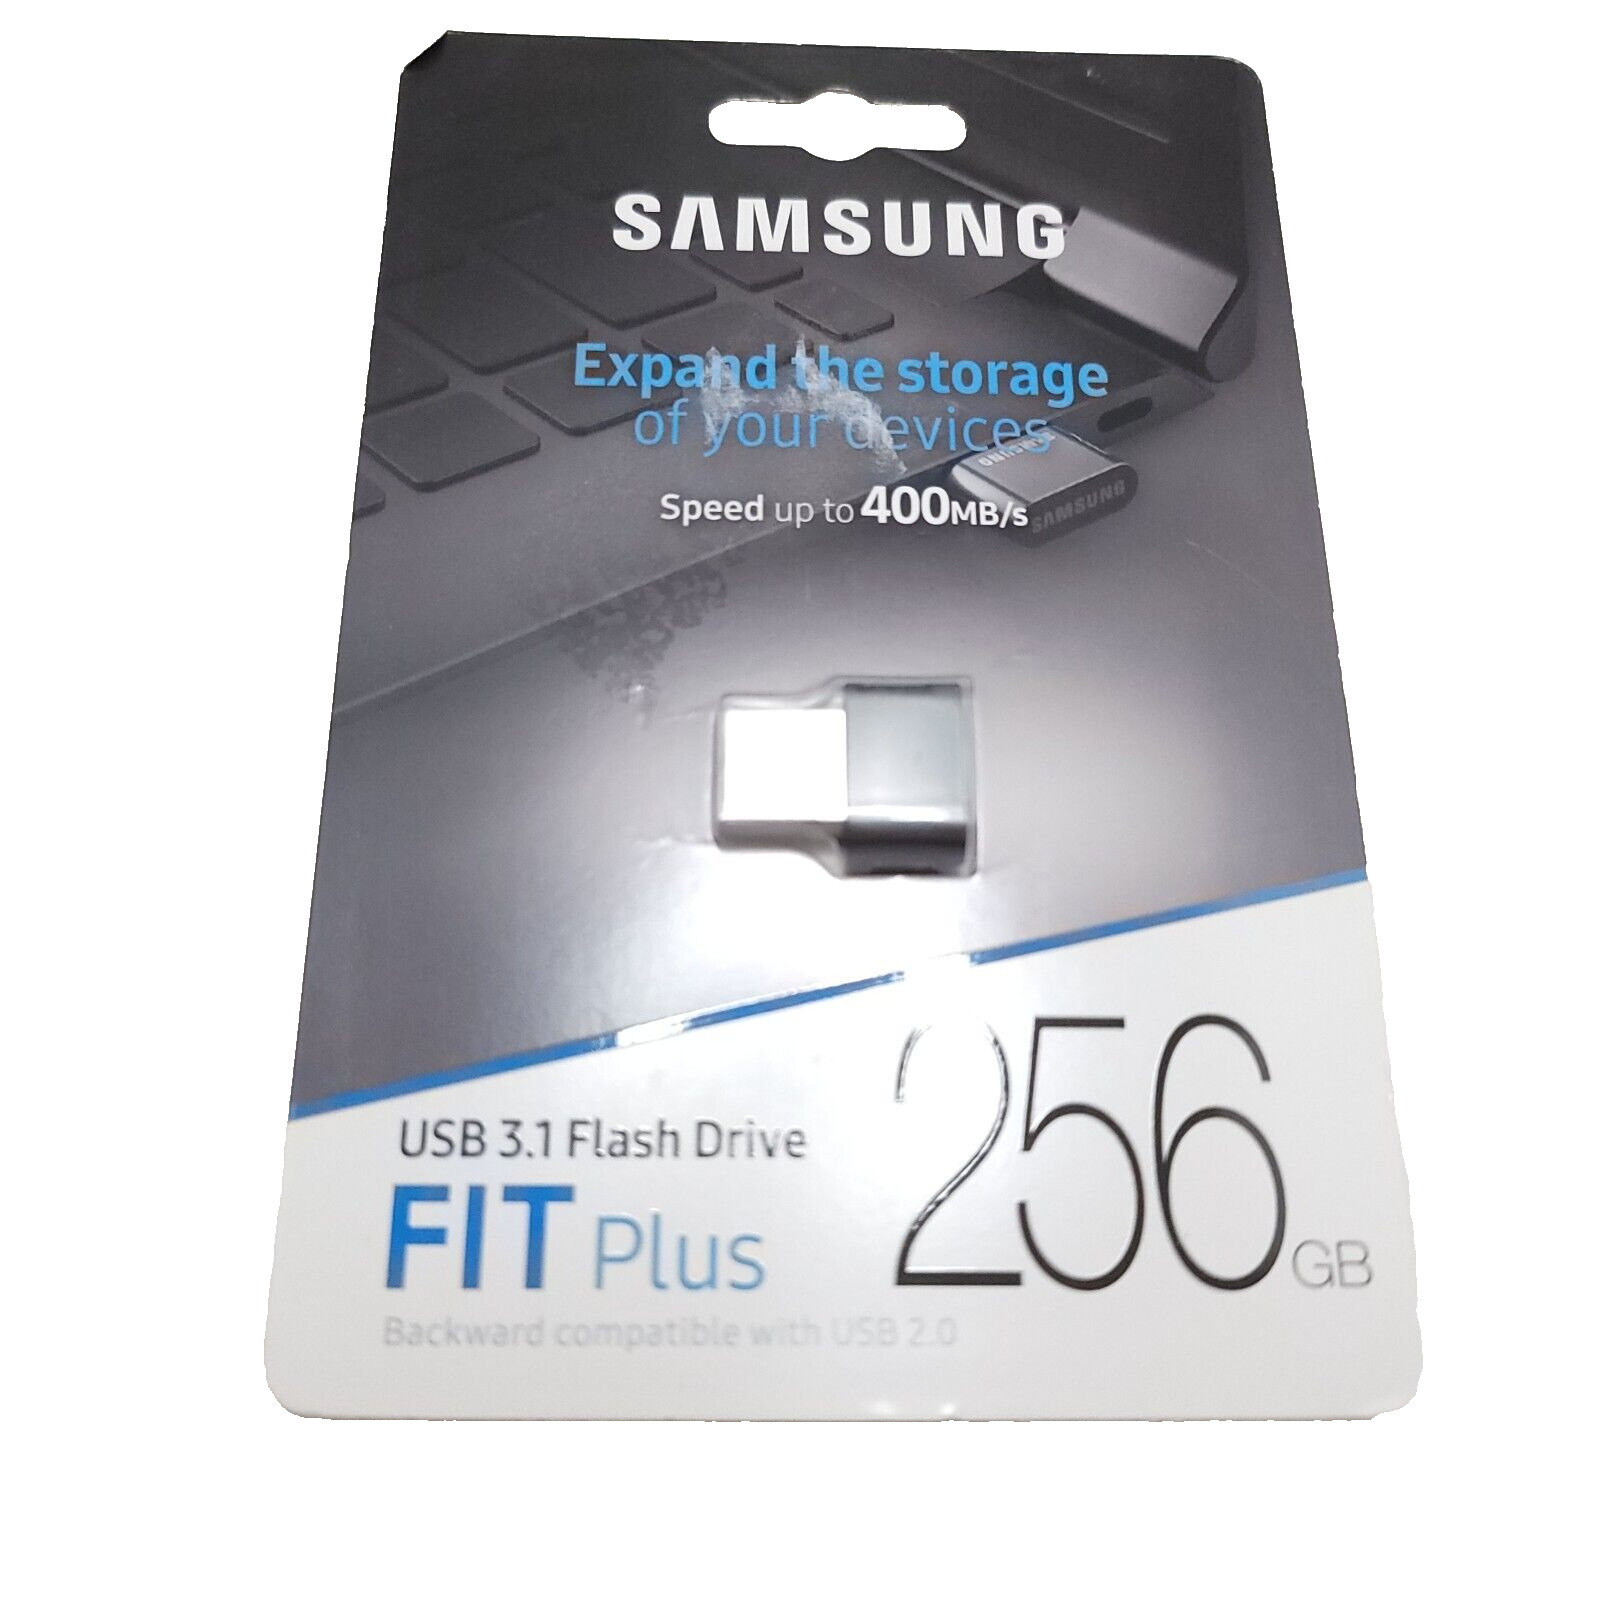 Samsung 256GB USB Fit Plus USB 3.1 Flash Drive Brand New MUF-256AB 887276265940